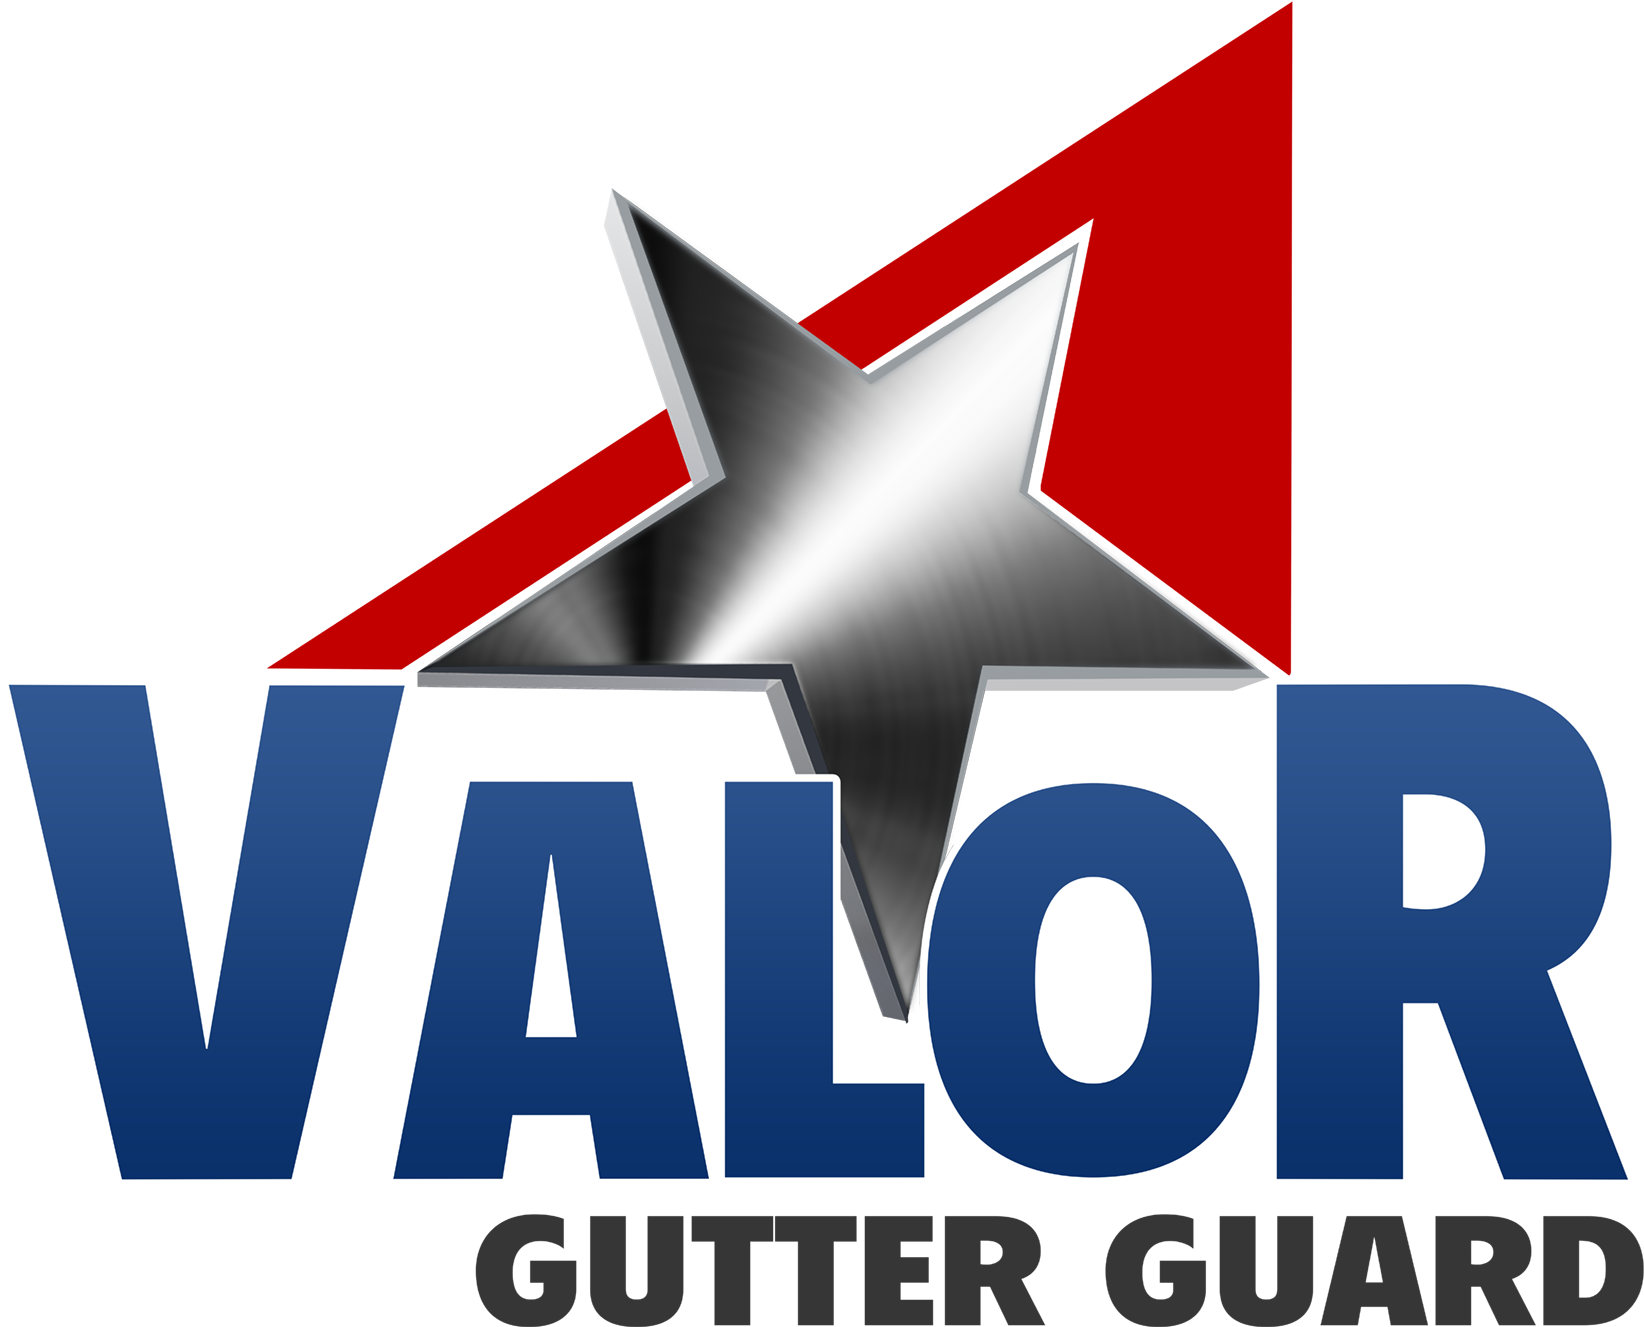 Valor Gutter Guard Logo (1800x1385), Png Download